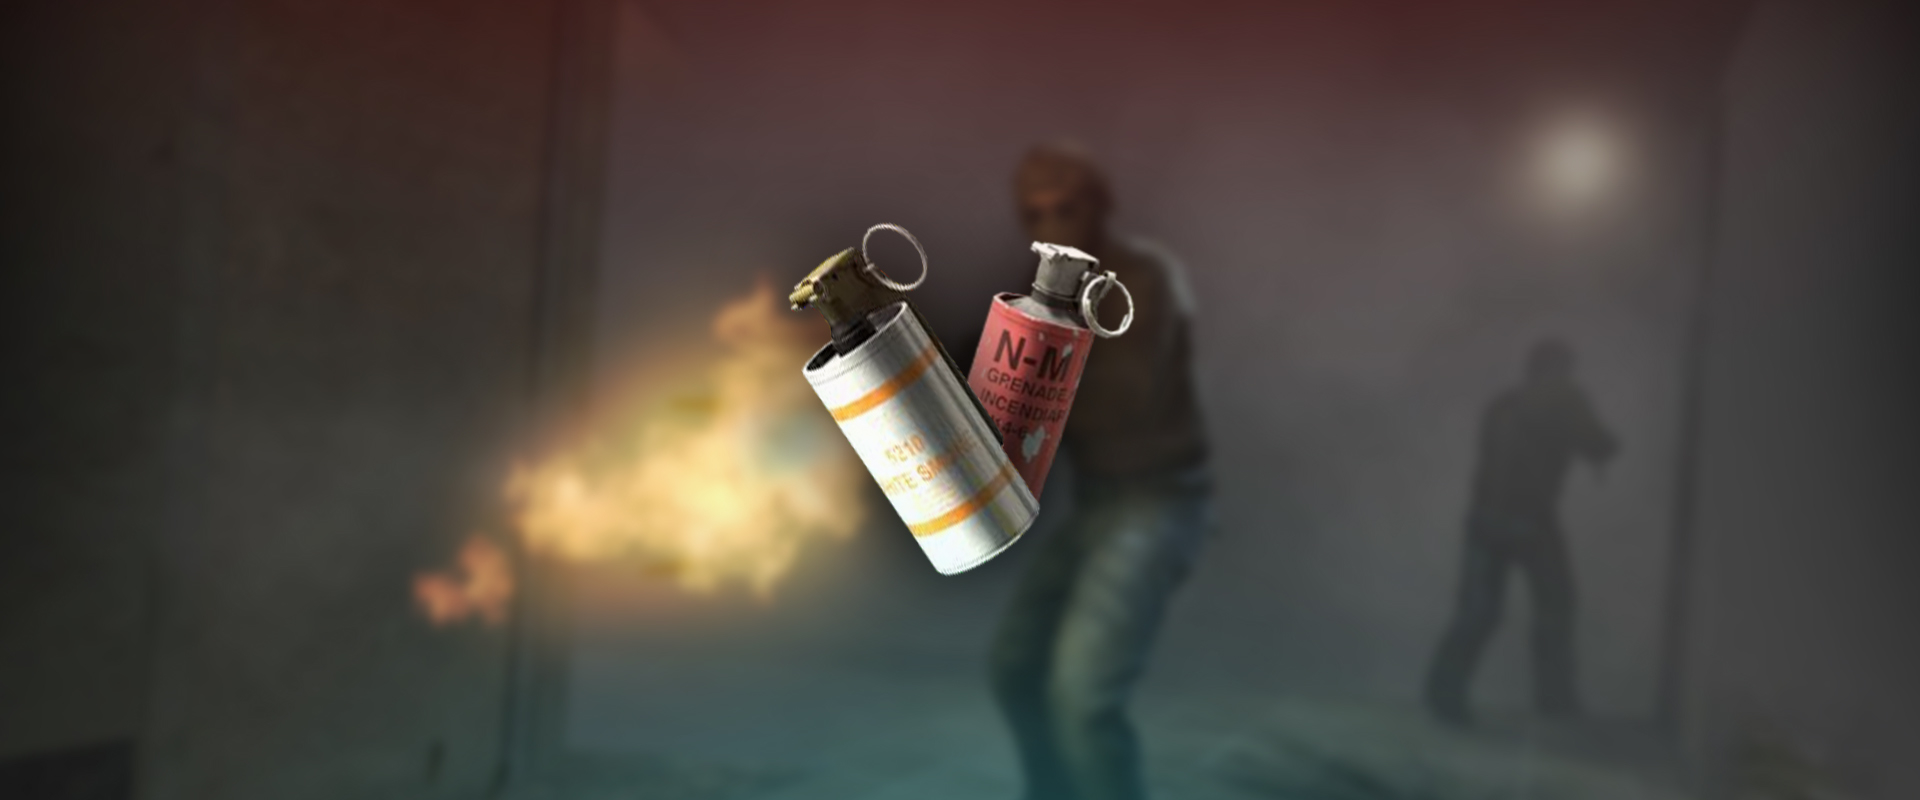 Szóval nincs többé füst-molotov bug? Aha...! -videó